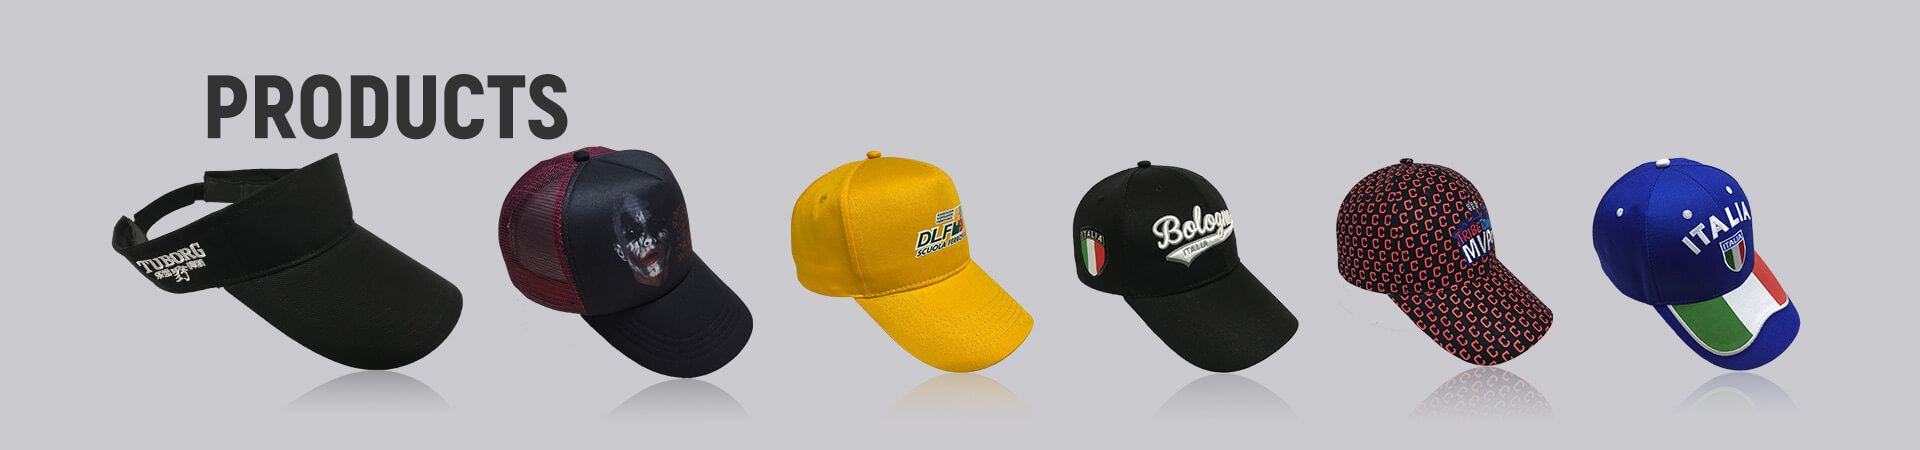 Chapeau de seau Archives - Casquette de baseball, casquette de sport, casquette de golf, chapeau de seau, chapeau de pêcheur, chapeau de camionneur